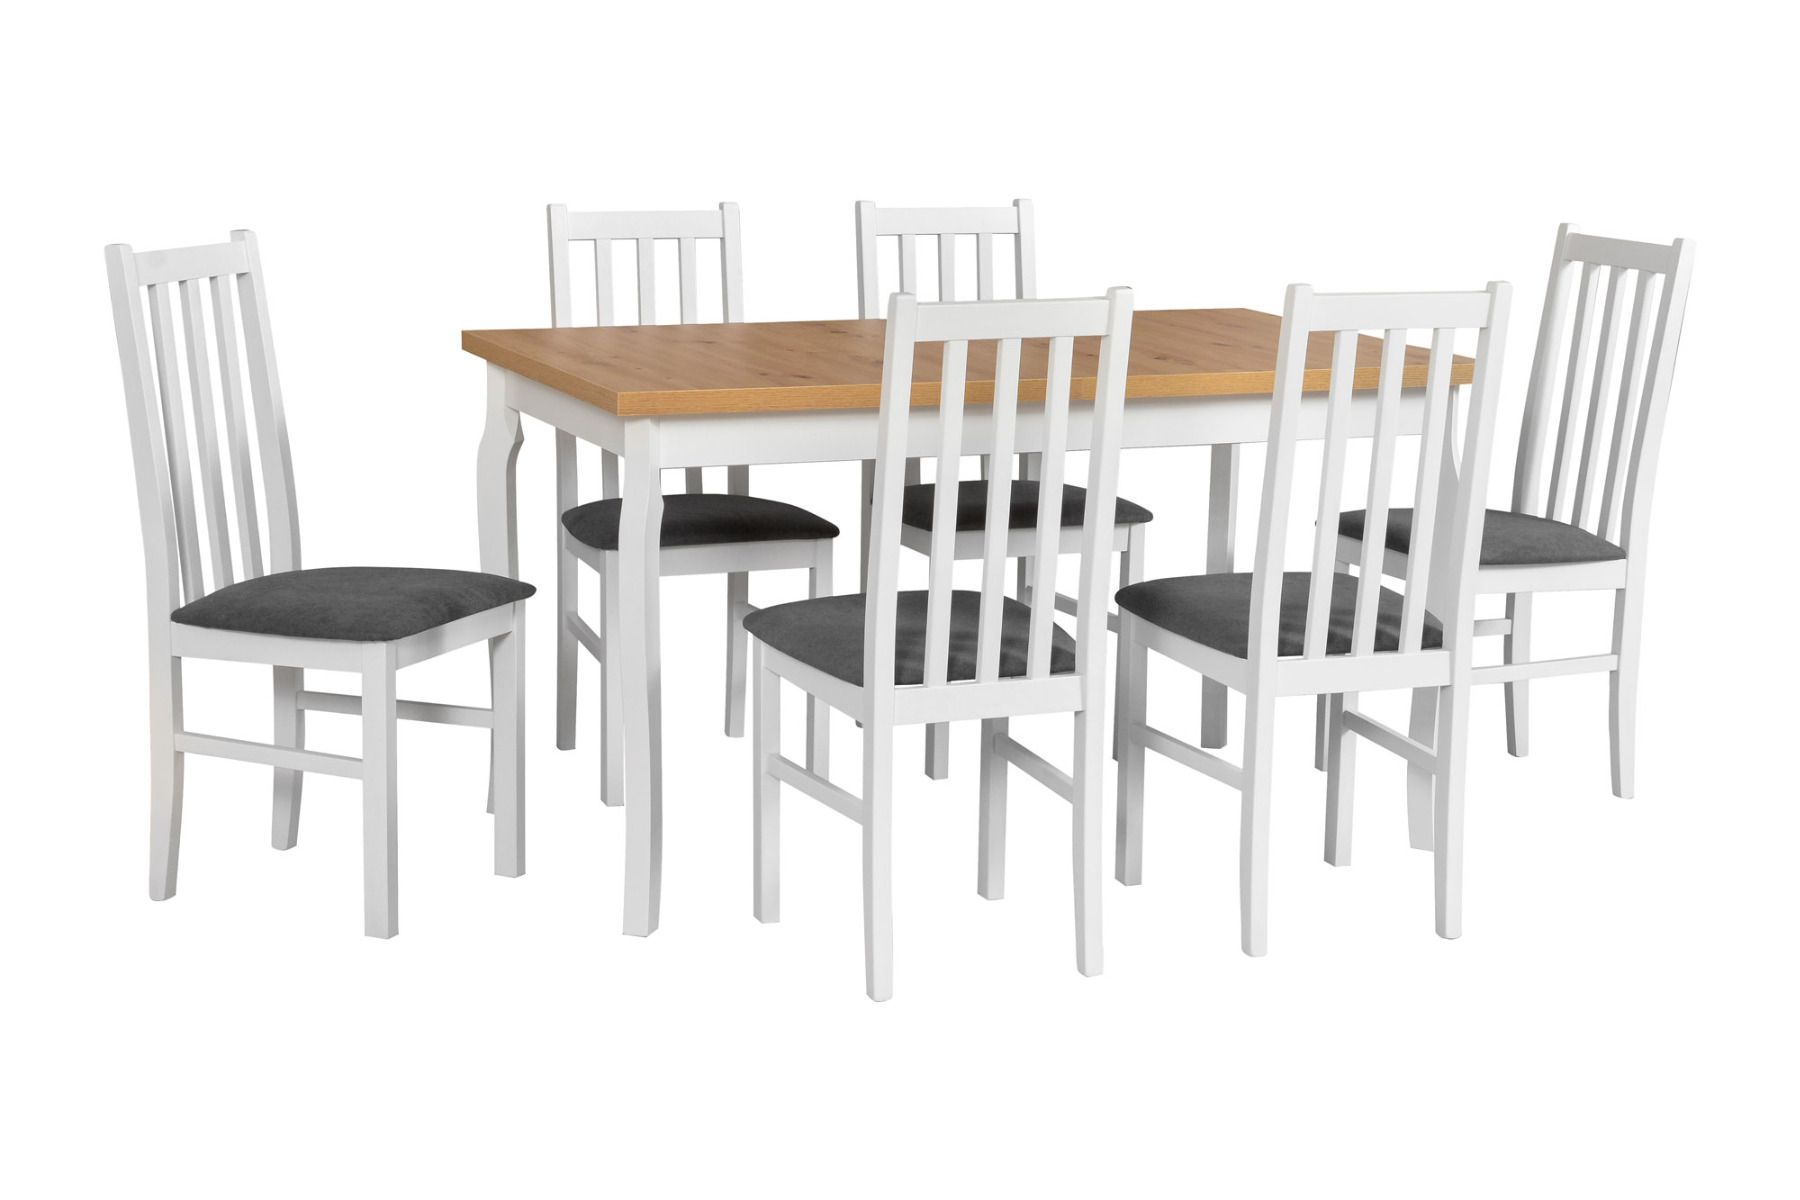 Esszimmer Komplett - Set G, 7 - teilig, ausziehbarer Tisch, gepolsterte Sessel, Farbe: Weiß/Eiche, modernes und einfaches Design, sehr gute Stabilität